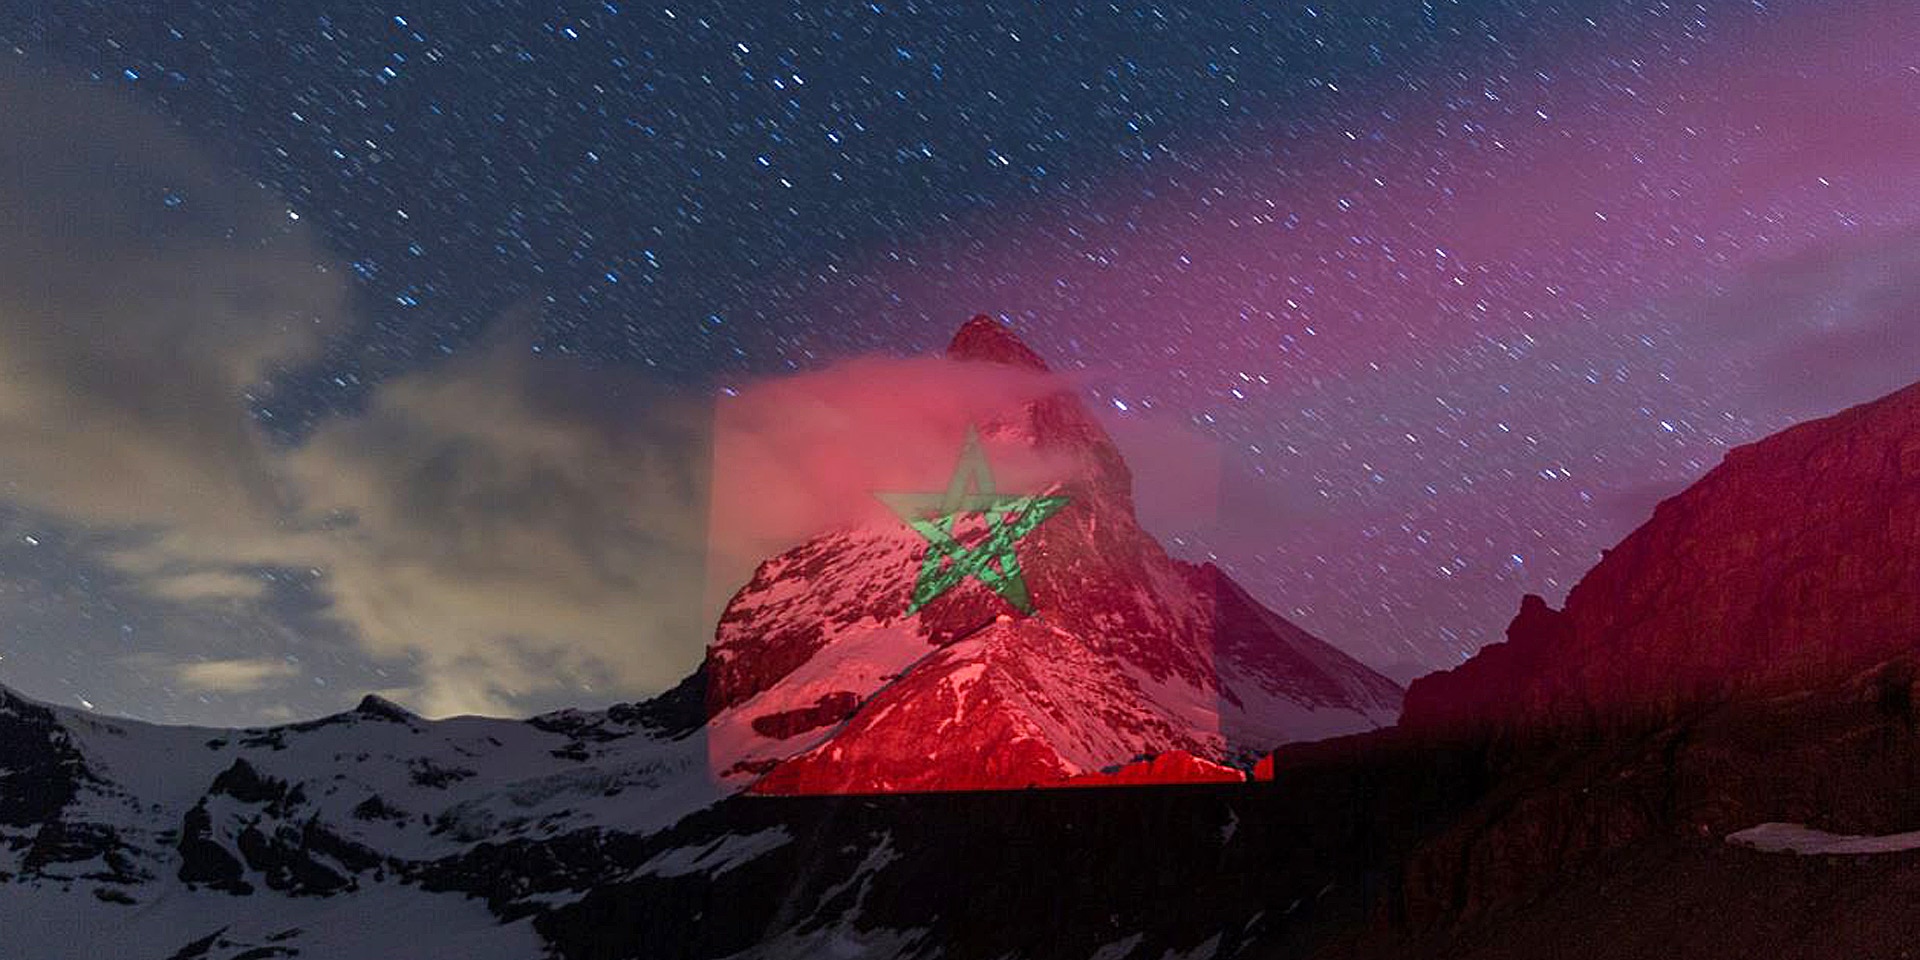 La bandiera del Marocco, rossa e verde, proiettata sull’iconica montagna svizzera del Cervino.